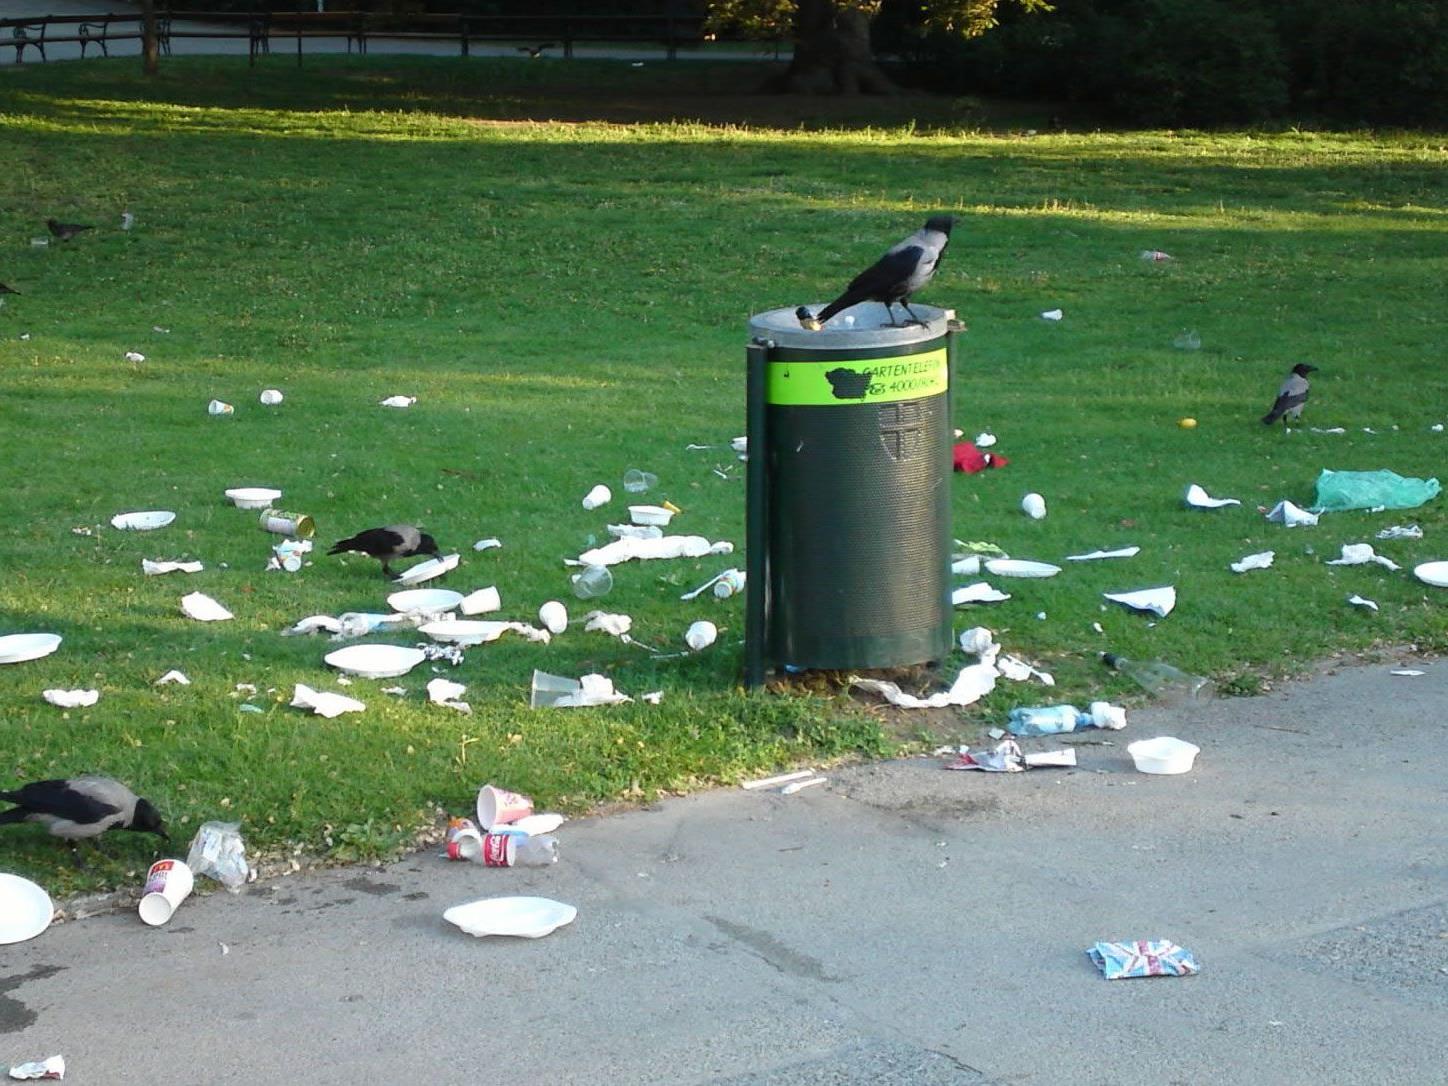 Nicht die Parkbesucher waren es, die ihren Müll neben den Mistkübeln verteilt haben, sondern die Krähen.